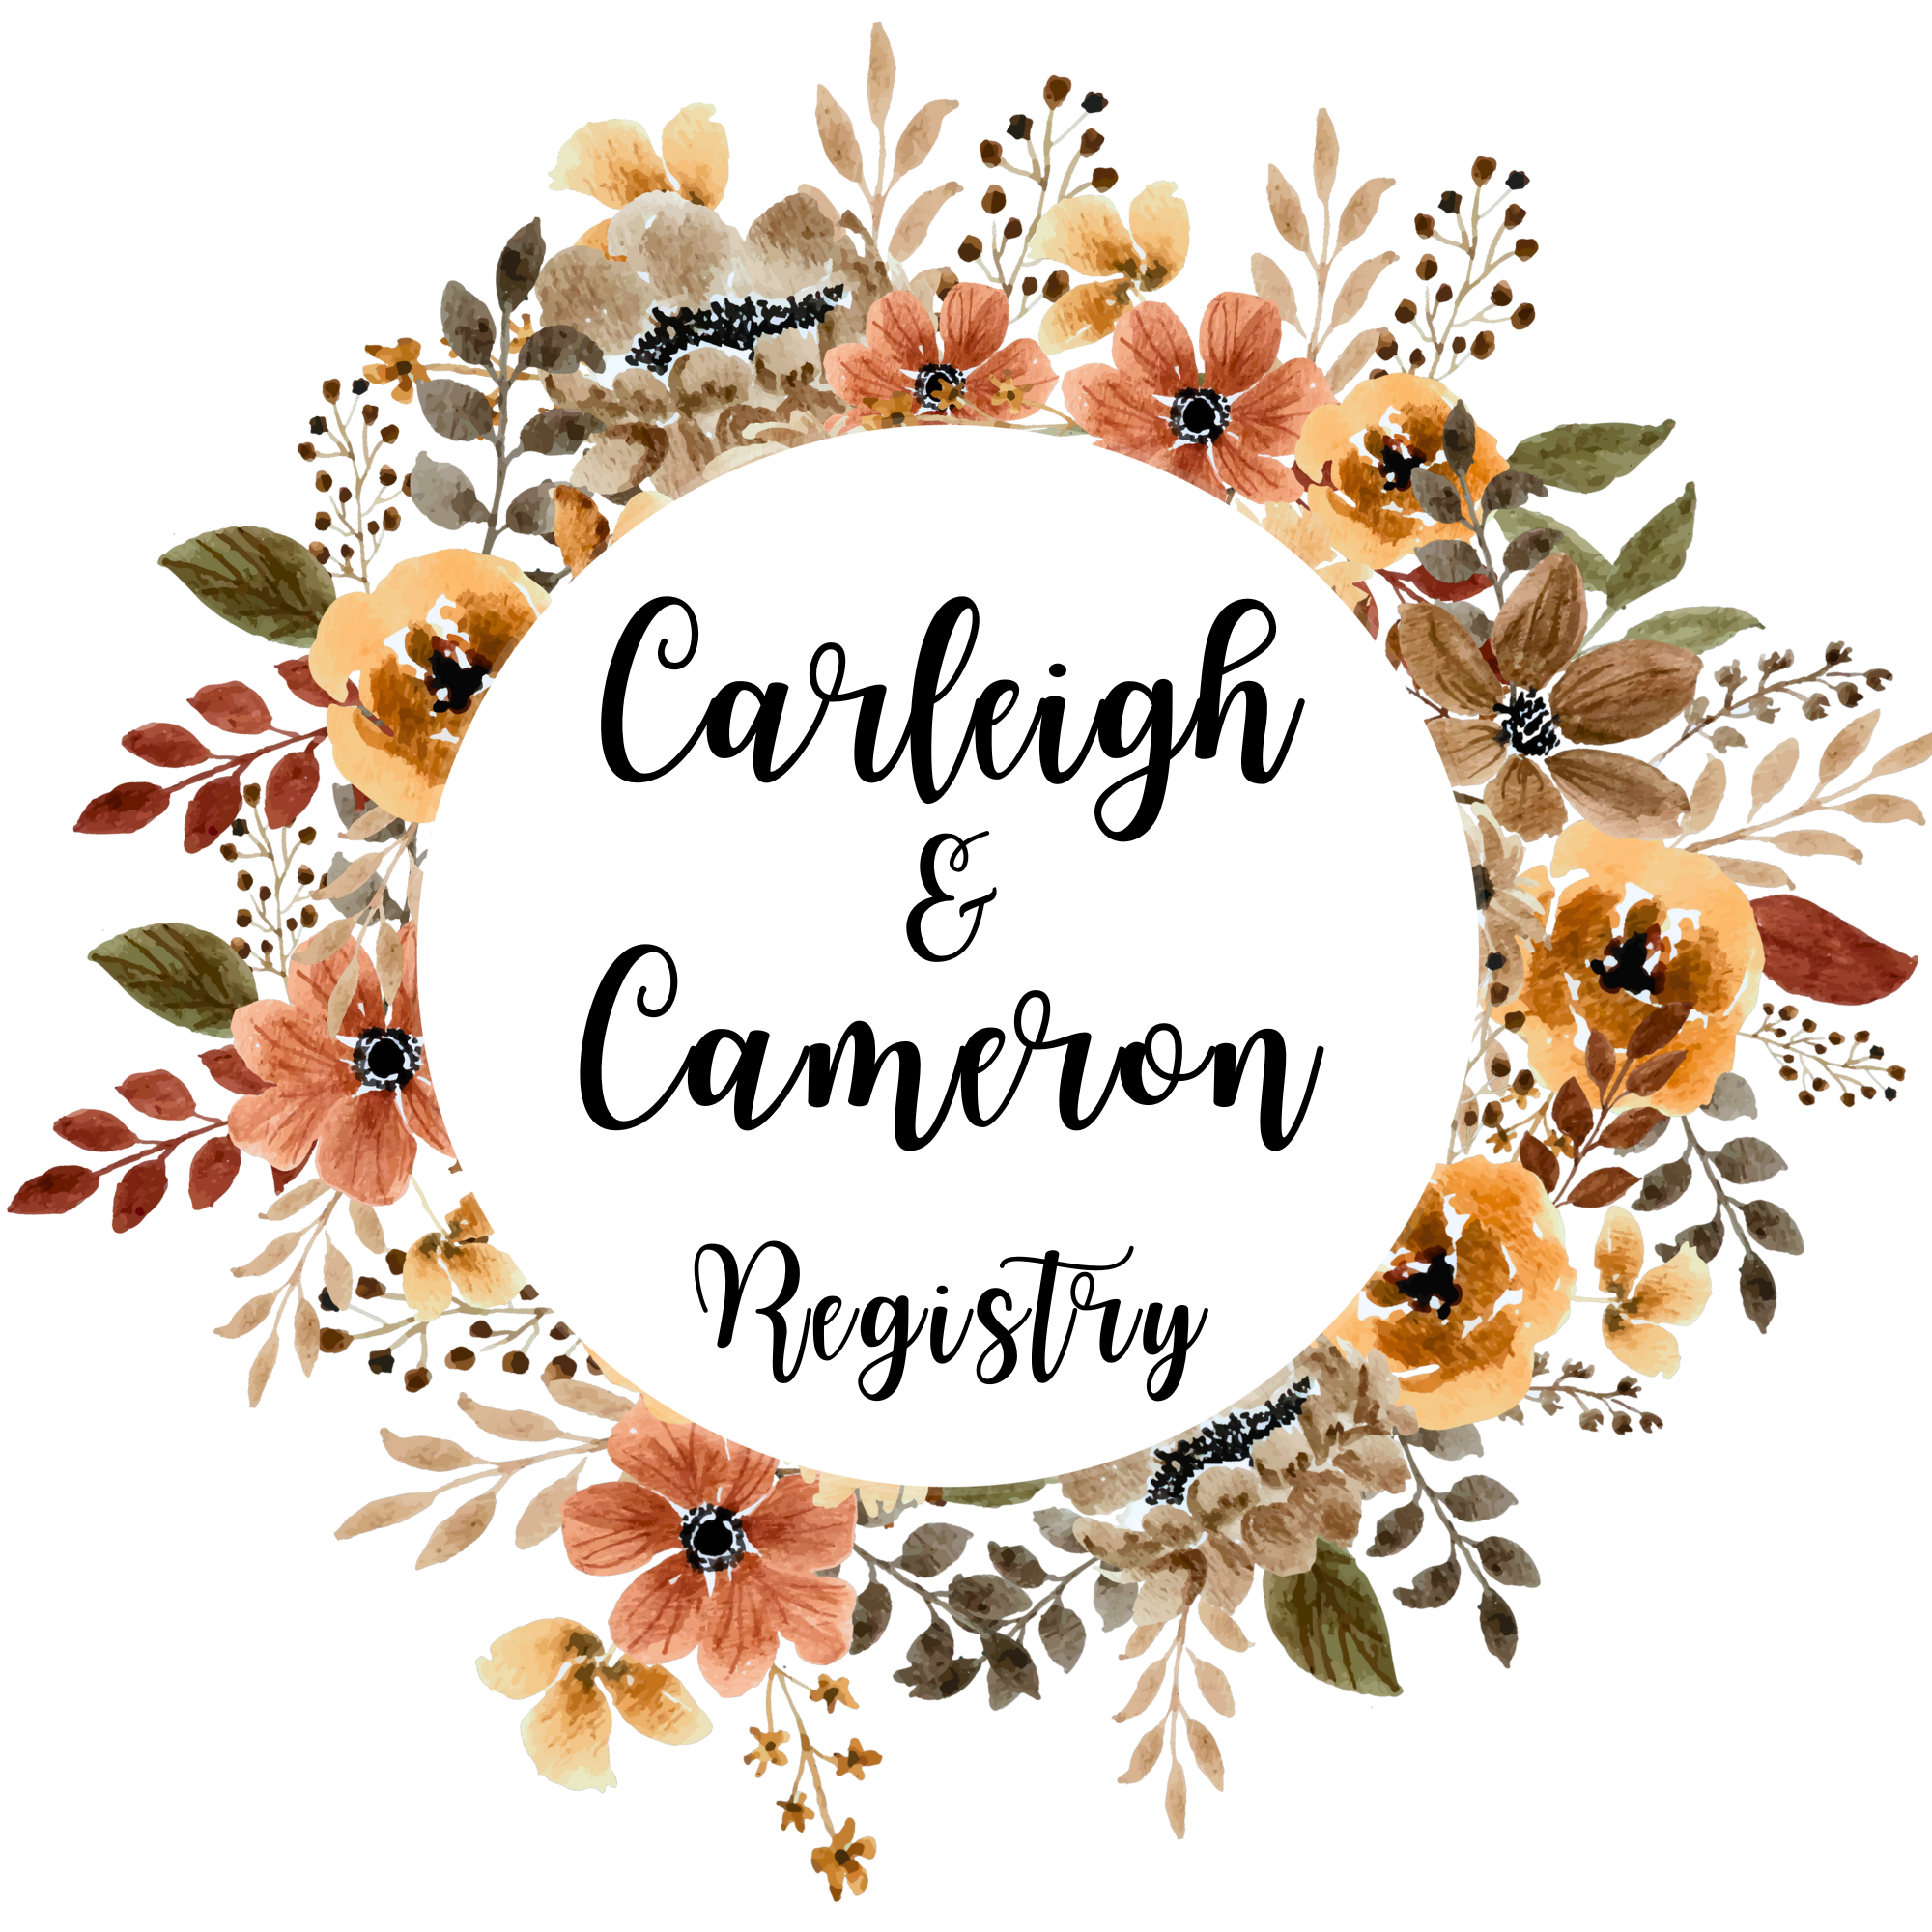 CARLEIGH + CAMERON WEDDING REGISTRY